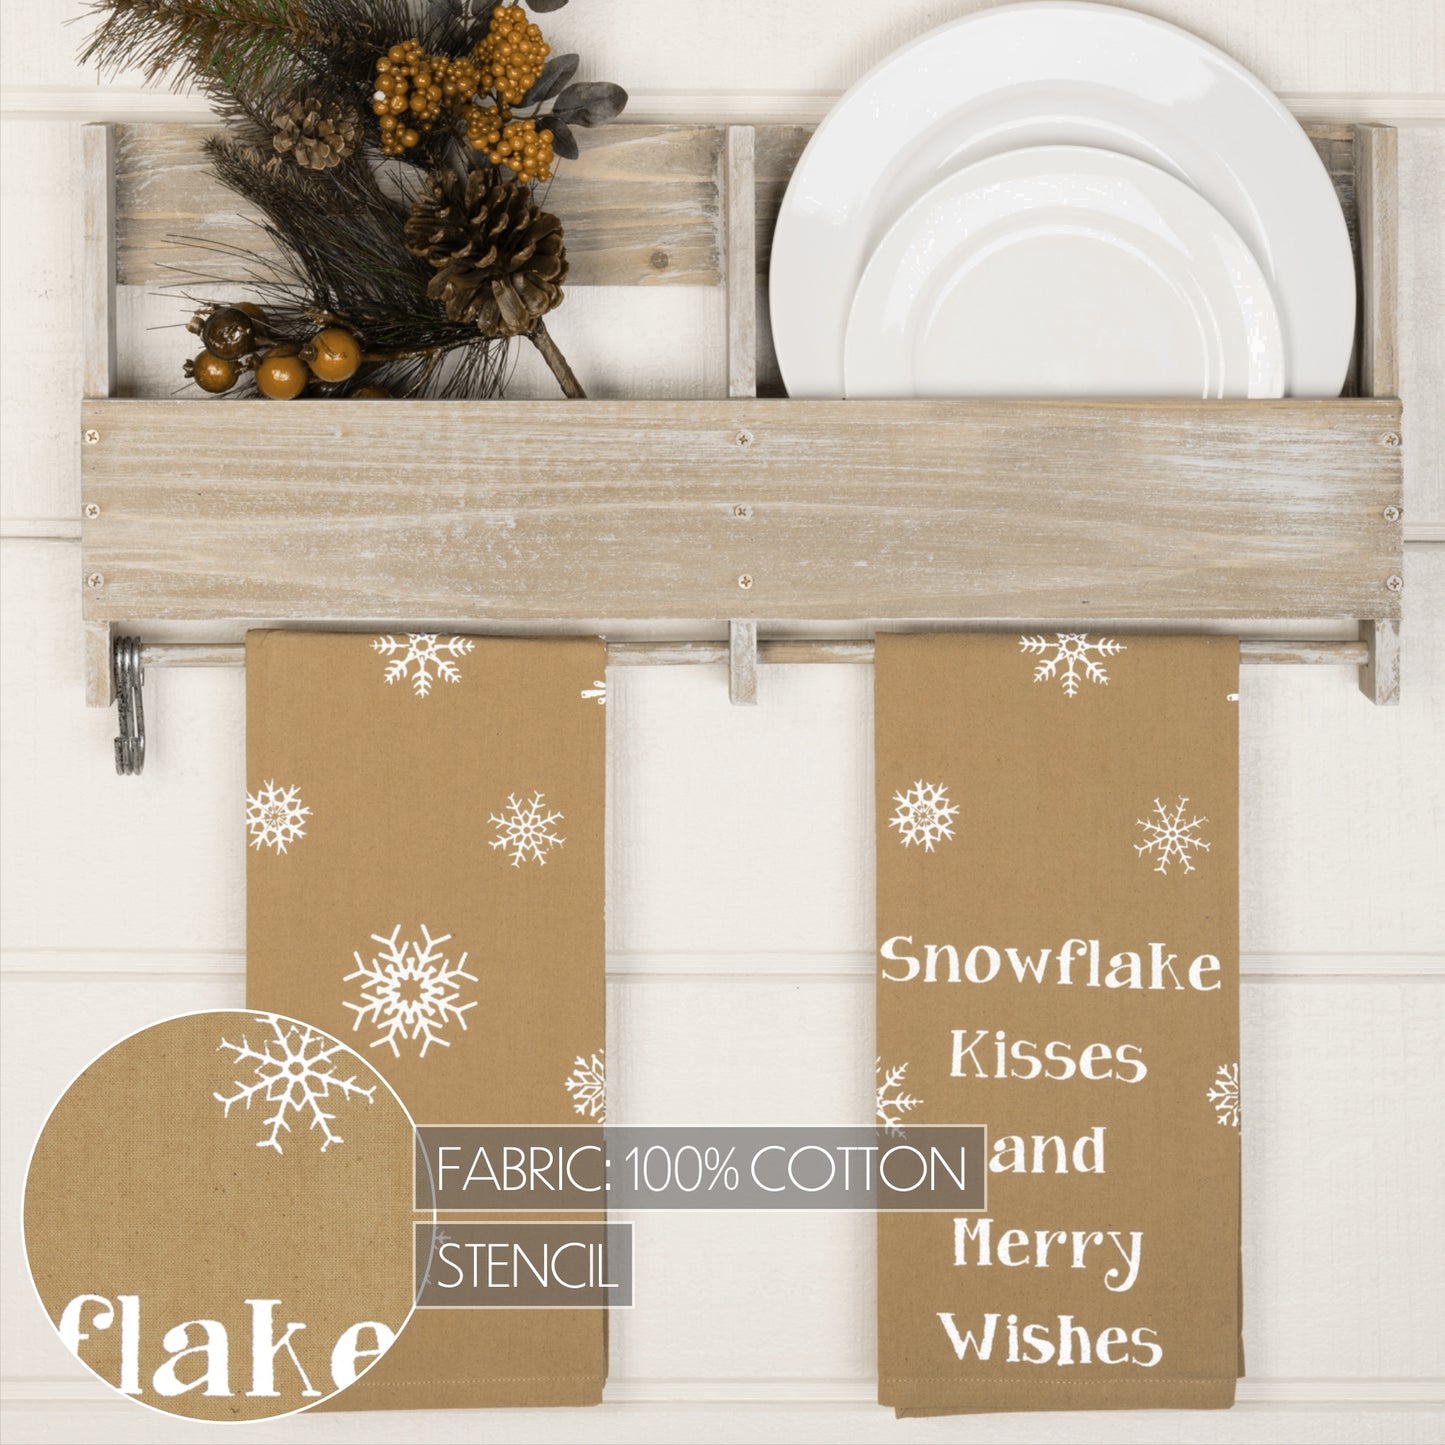 57390-Snowflake-Burlap-Natural-Snowflake-Kisses-Tea-Towel-Set-of-2-19x28-image